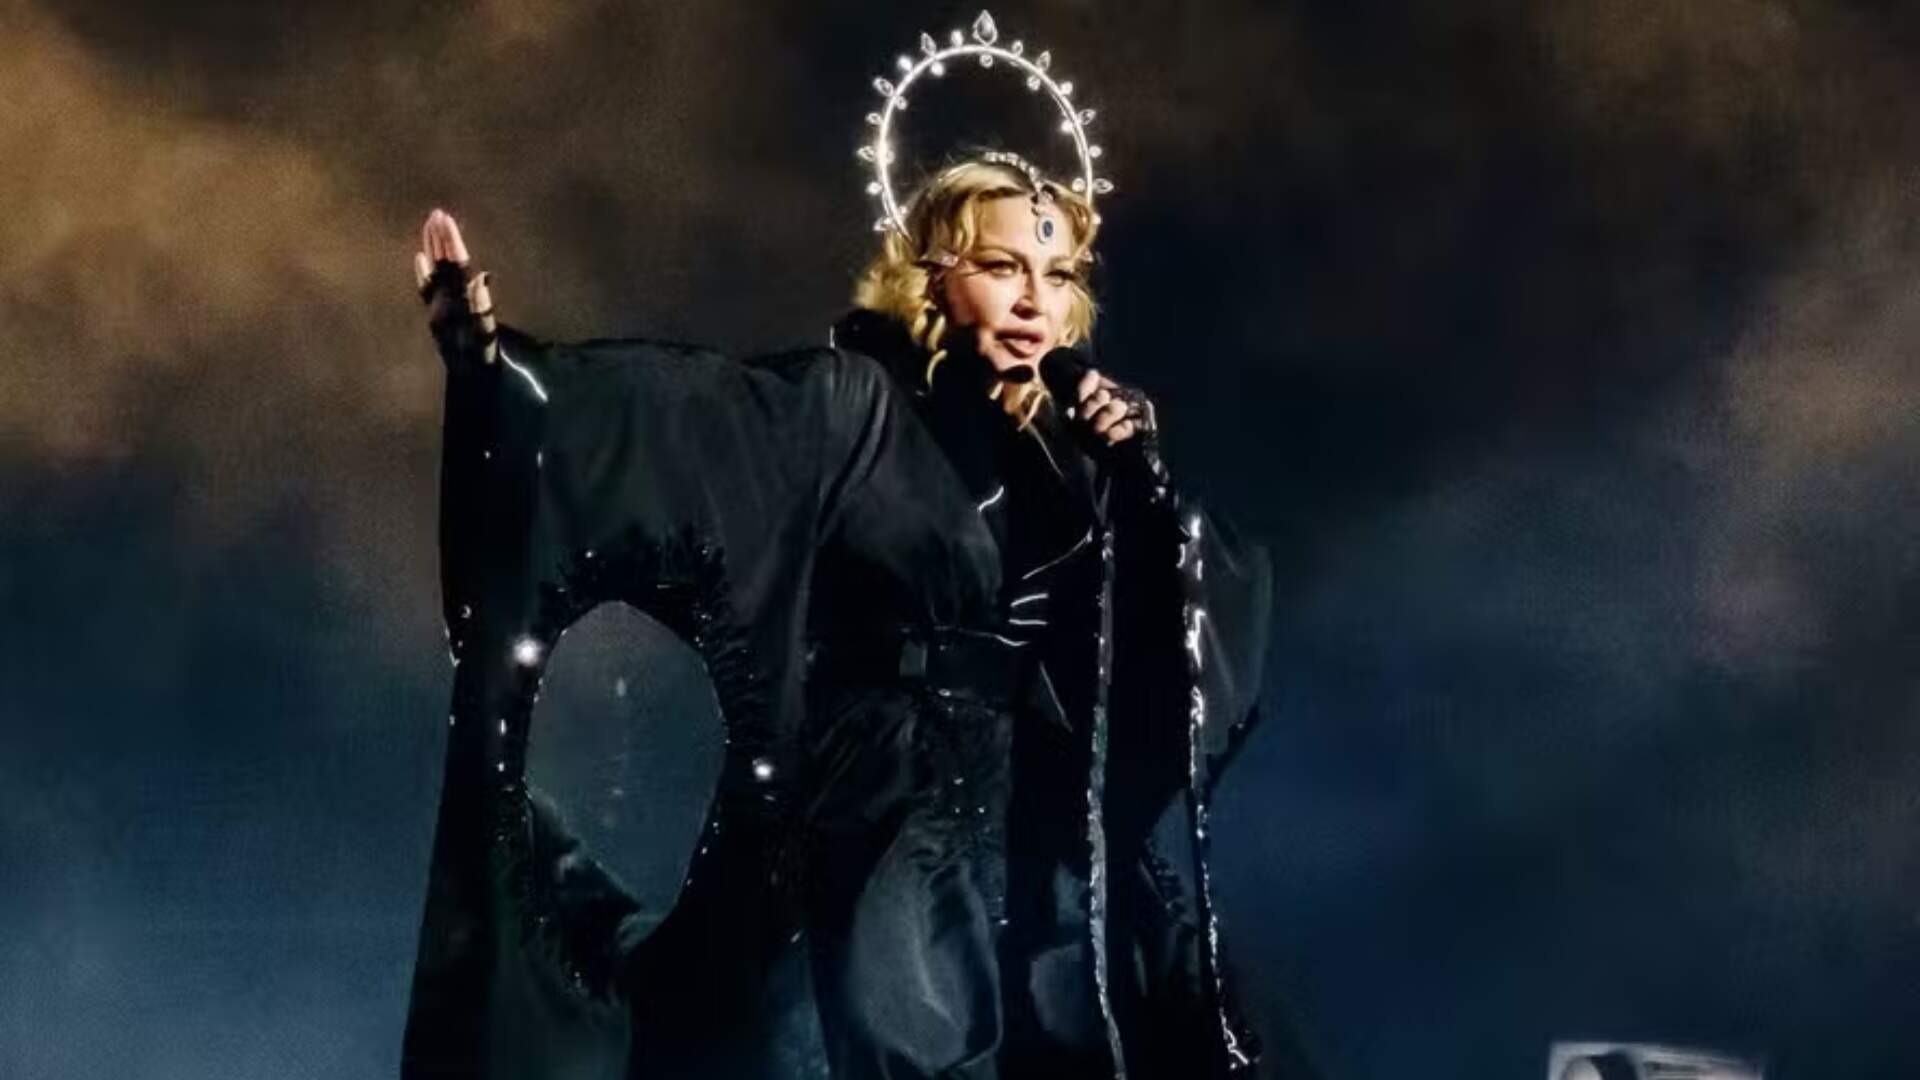 Madonna volta ao Brasil depois de 12 anos; confira tudo o que se sabe até o momento - Metropolitana FM